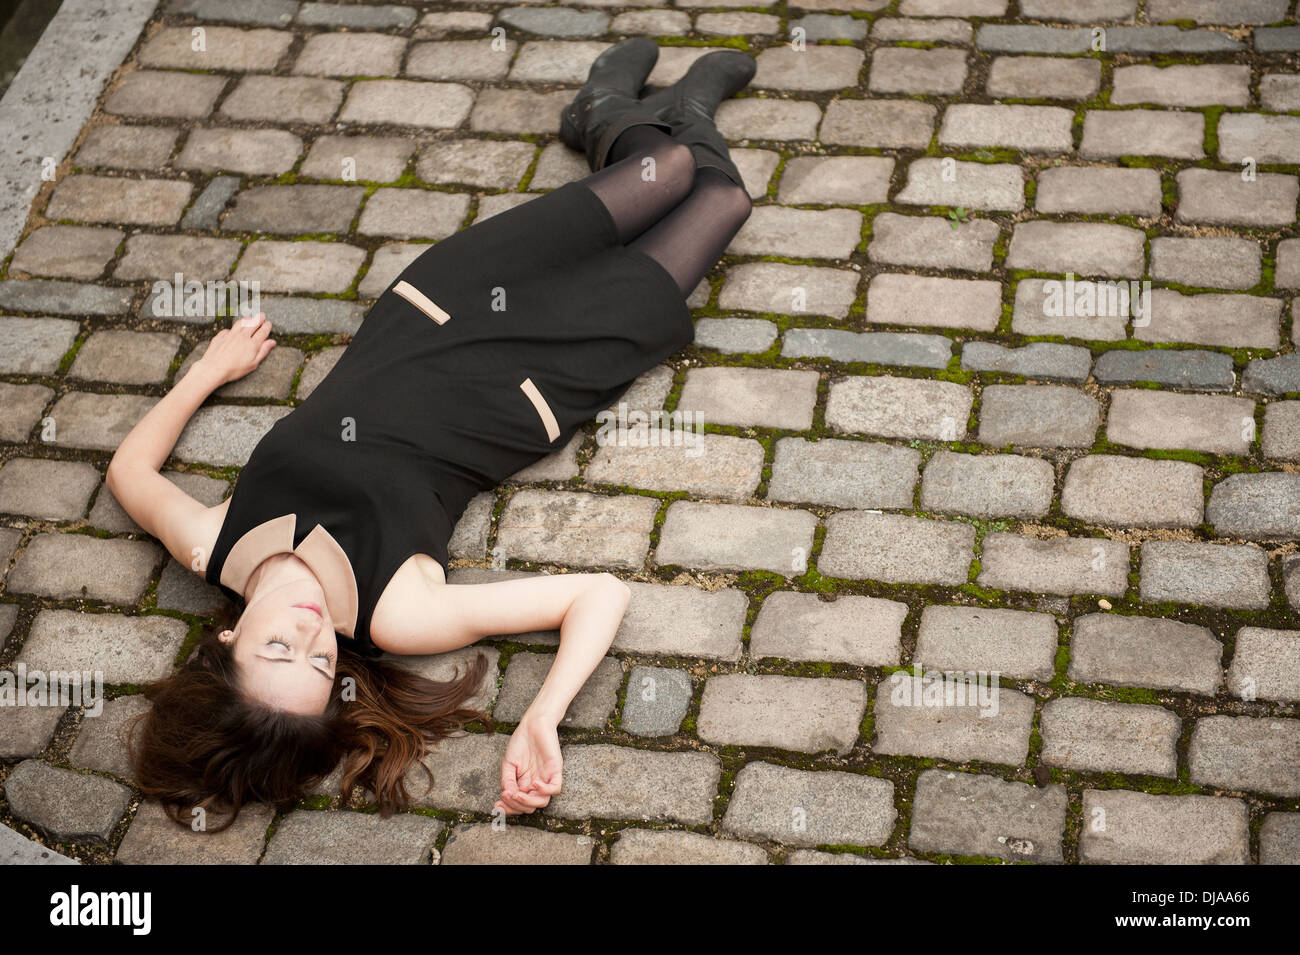 Vista in elevazione di una donna che indossa un abito nero e disteso (morto?) su una strada basolata. Foto Stock